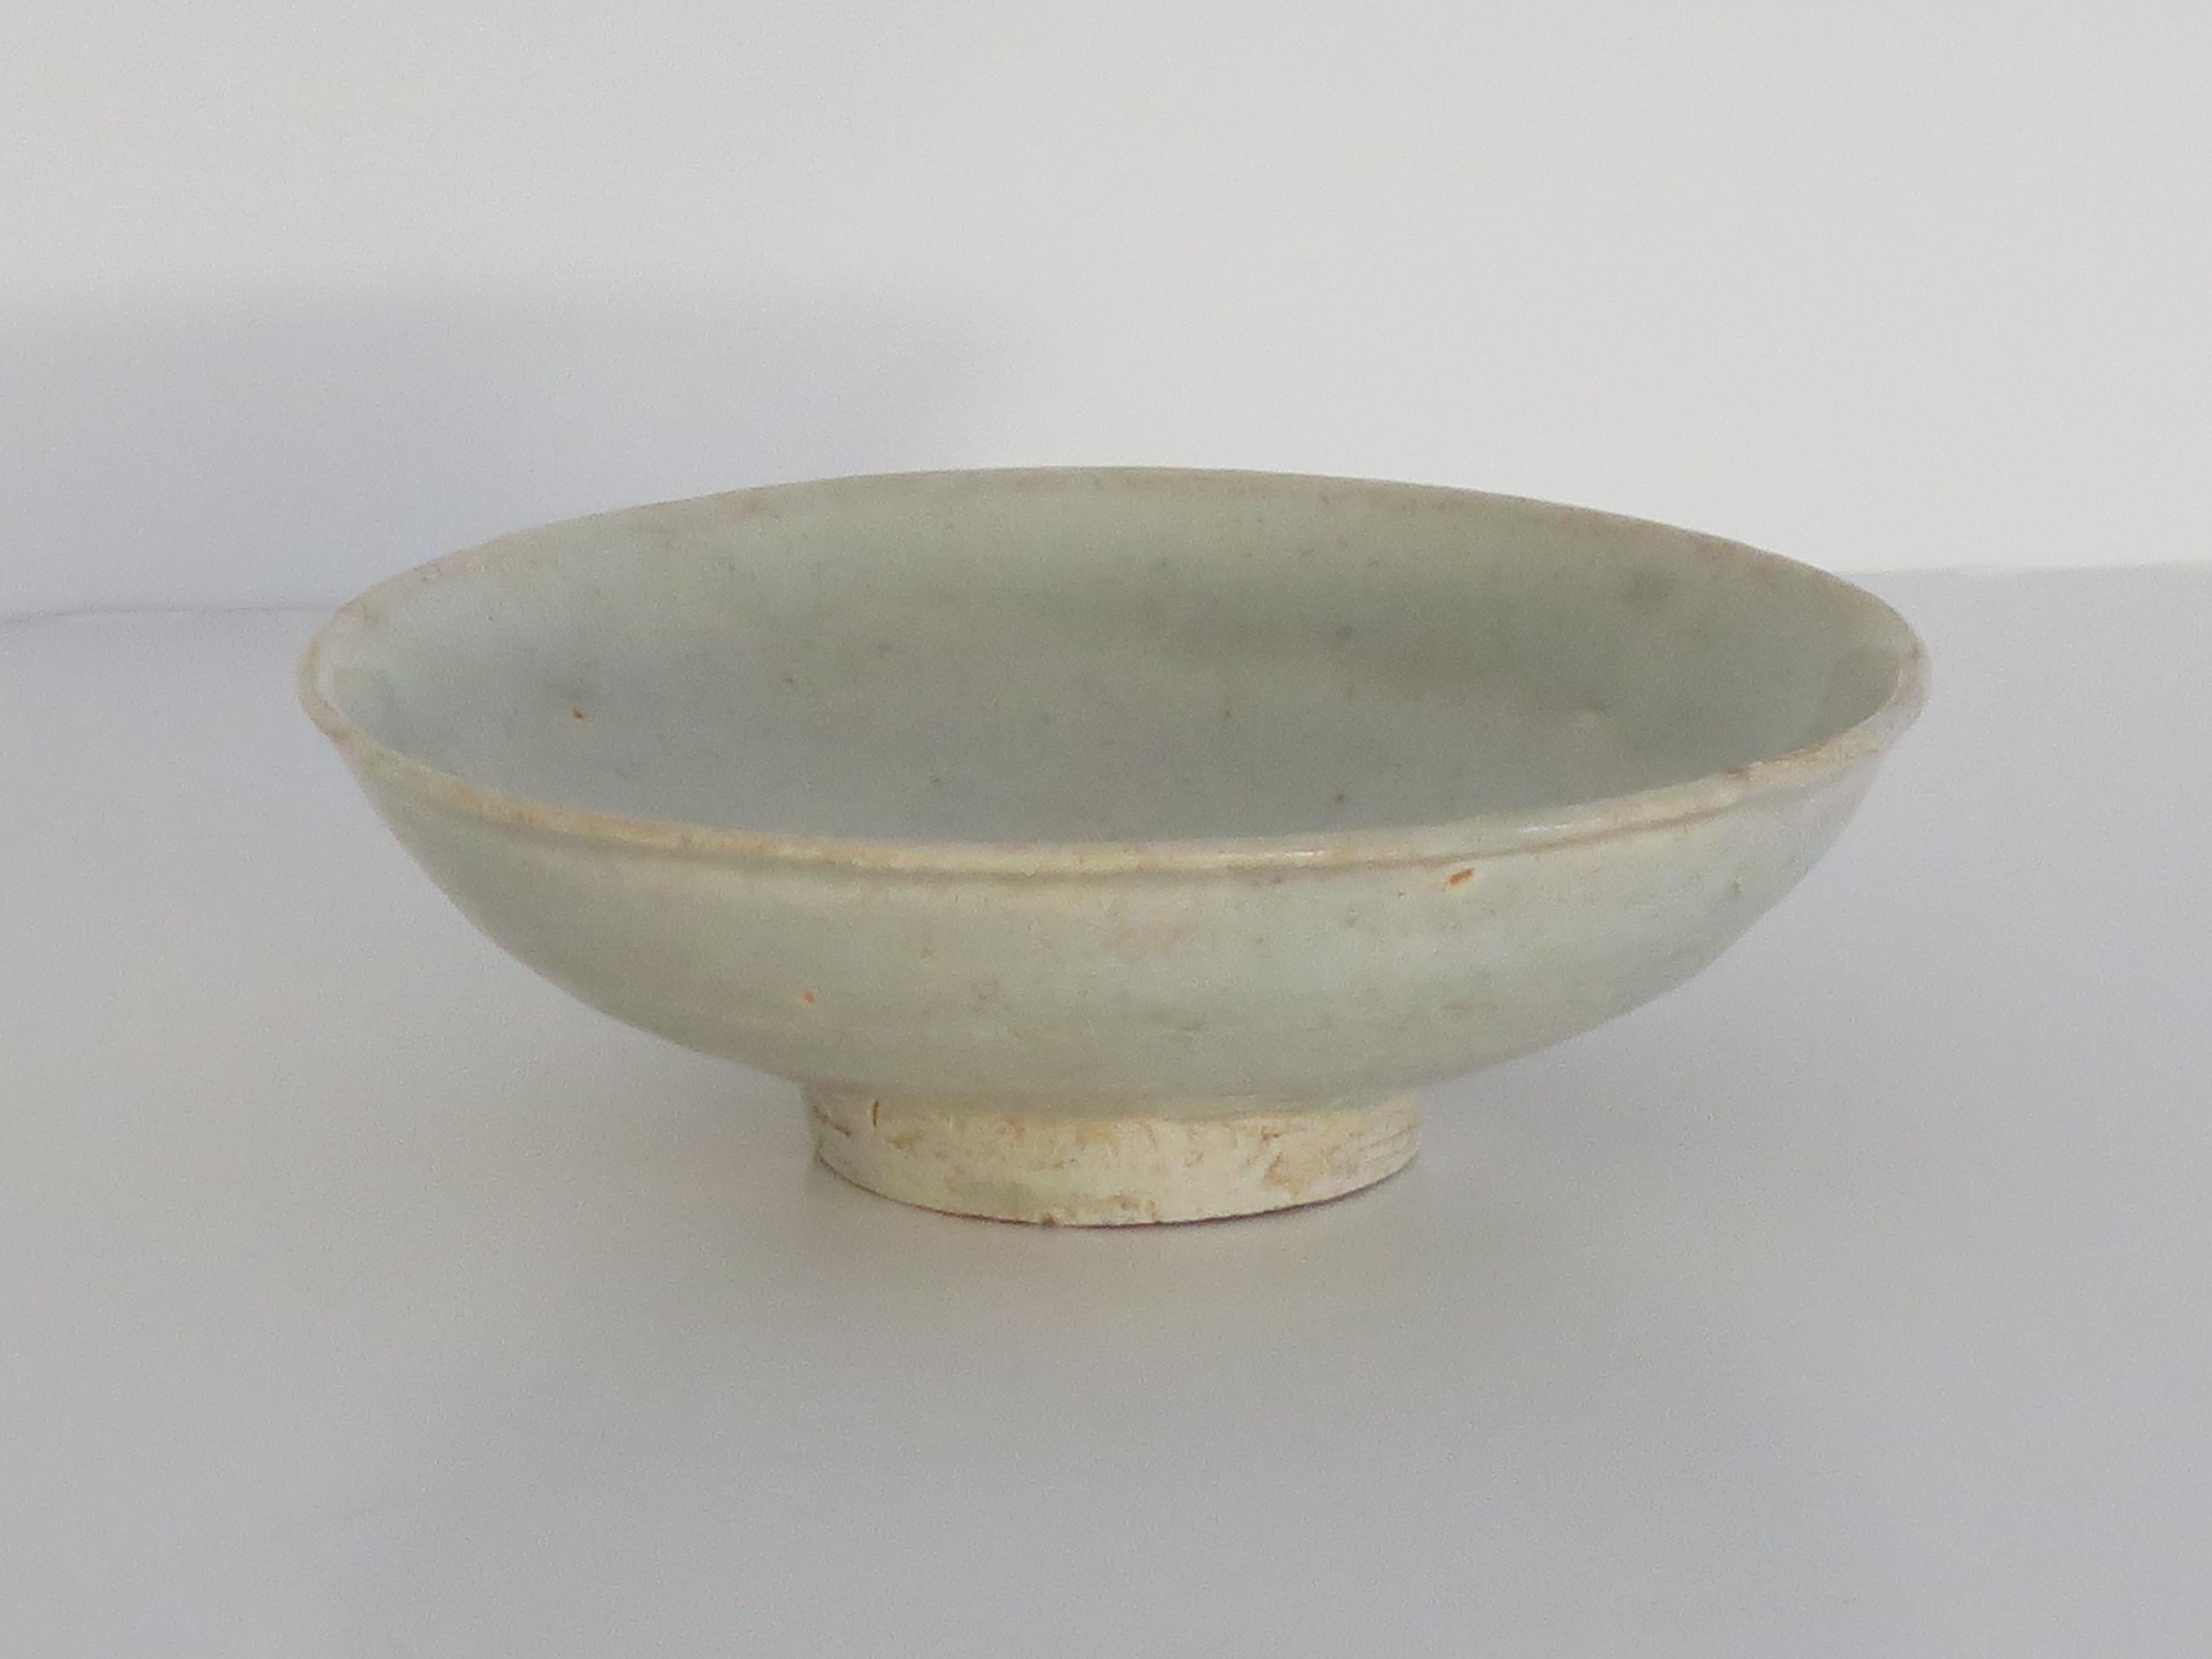 Il s'agit d'un très ancien petit bol en porcelaine chinoise de type Longquan Celadon, que nous datons de la dynastie Yuan ( 1279 à 1368) vers 1300, ou peut-être légèrement plus tôt, de la période des Song du Sud. ( 1127 à 1279)

Le bol est bien